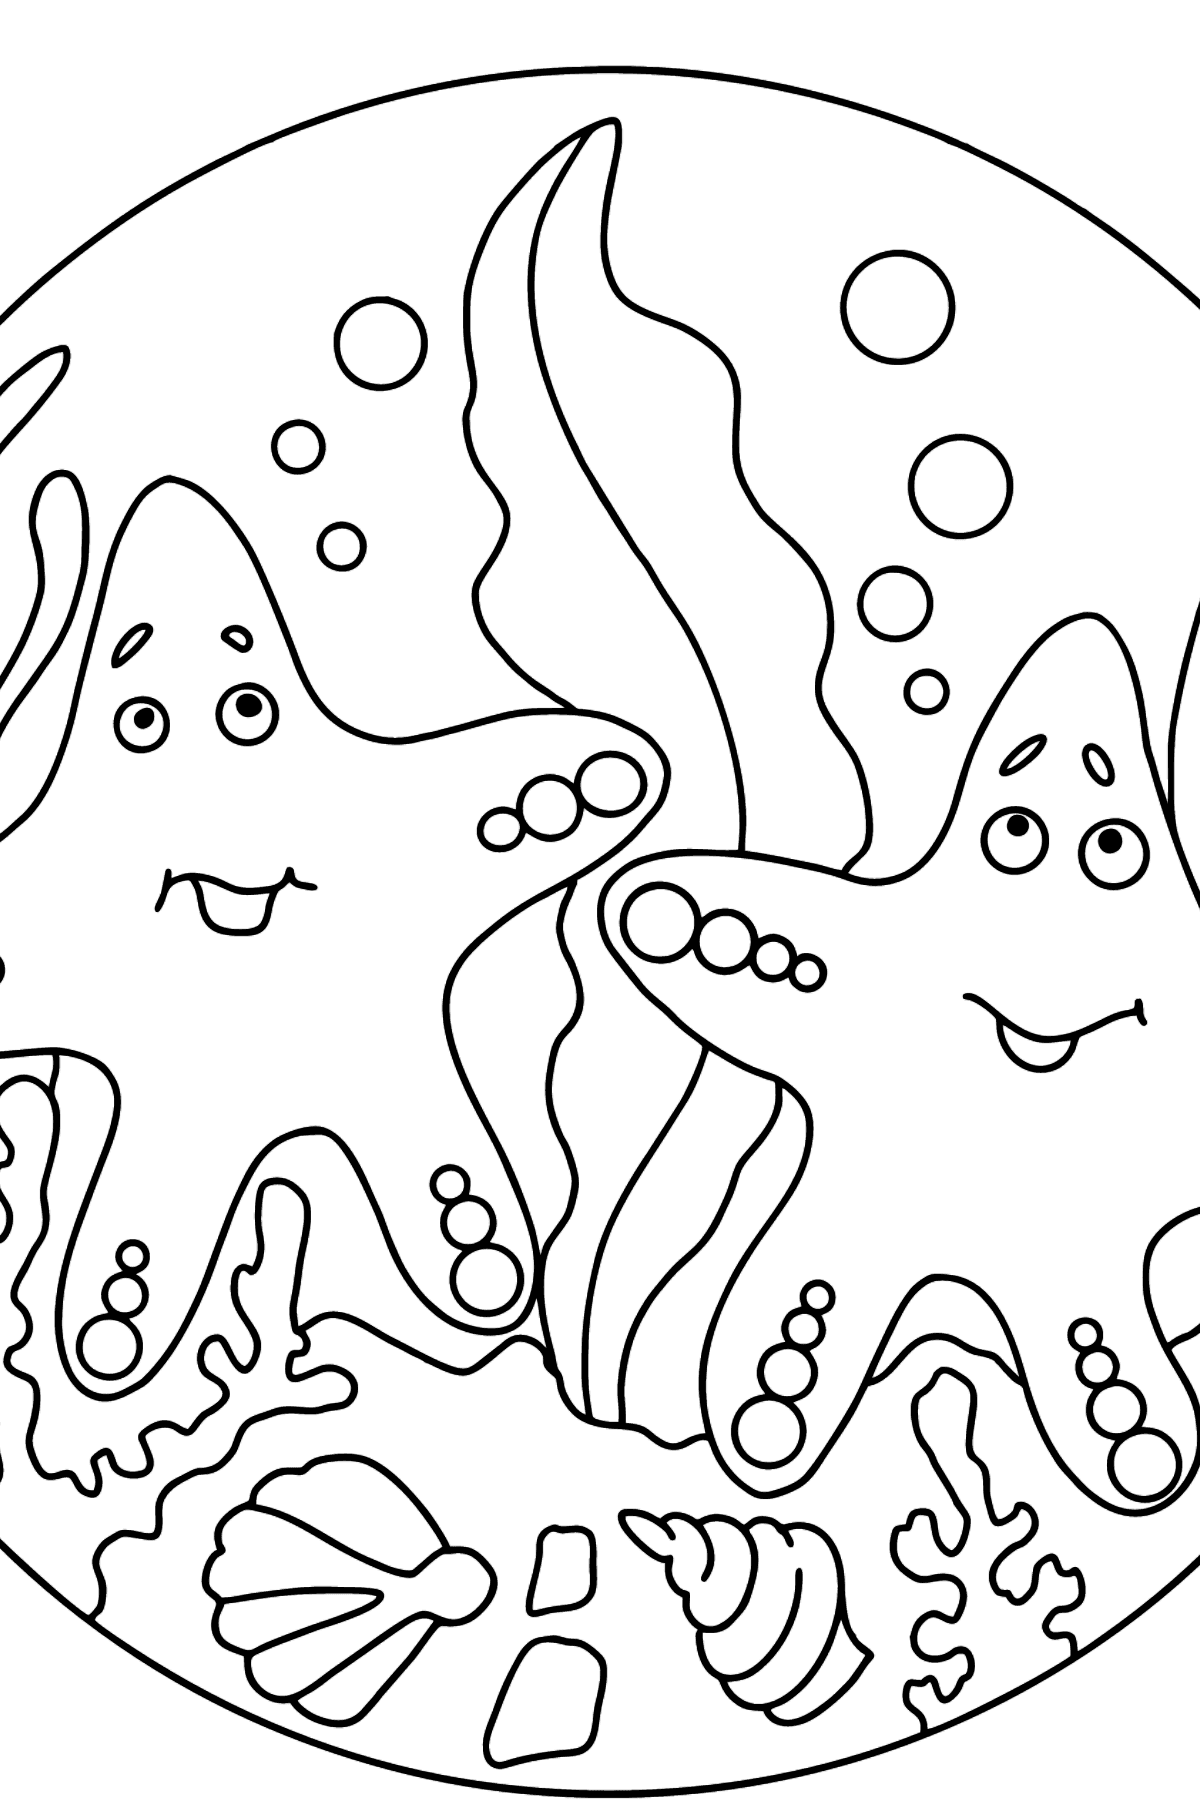 Dibujo para colorear Dos estrellas de mar (difícil) - Dibujos para Colorear para Niños